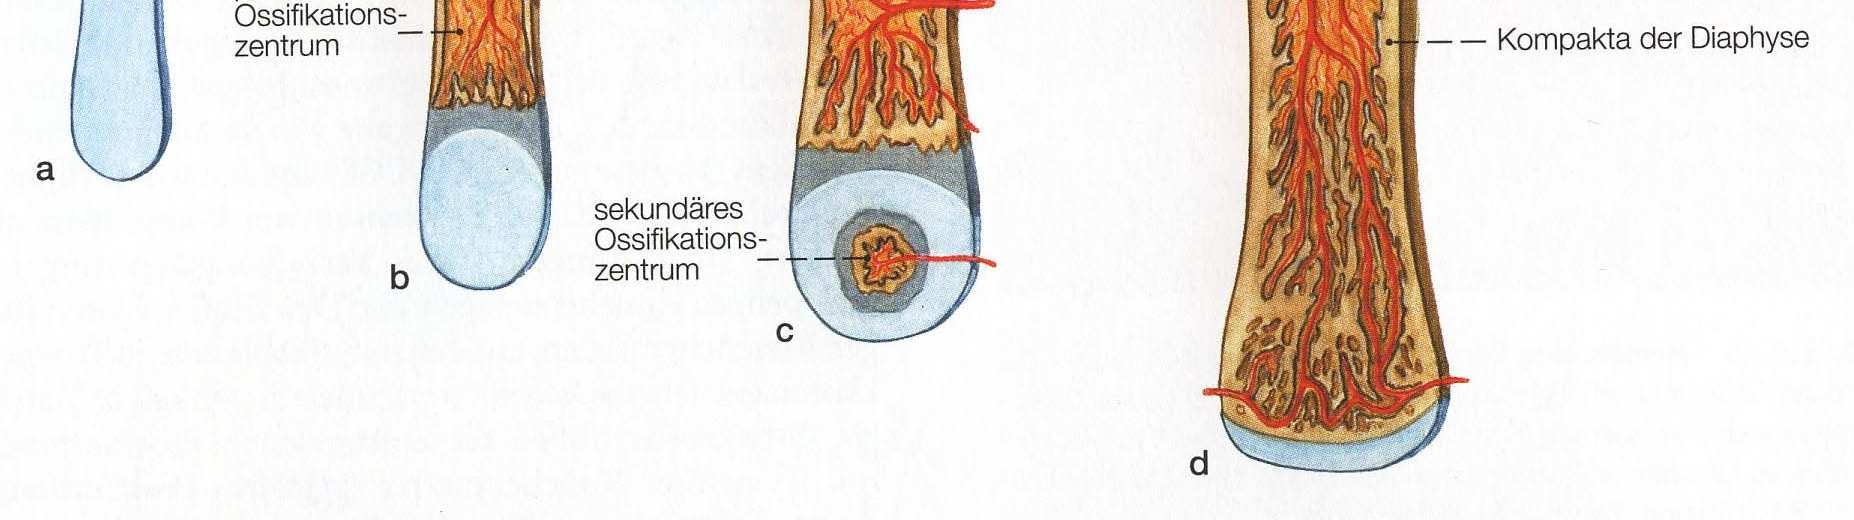 Abbildung 1: Aufbau des wachsenden Röhrenknochens [1] In der Diaphyse findet die perichondrale Ossifikation statt. Die Dickenzunahme geschieht anhand appositionellen Wachstums.